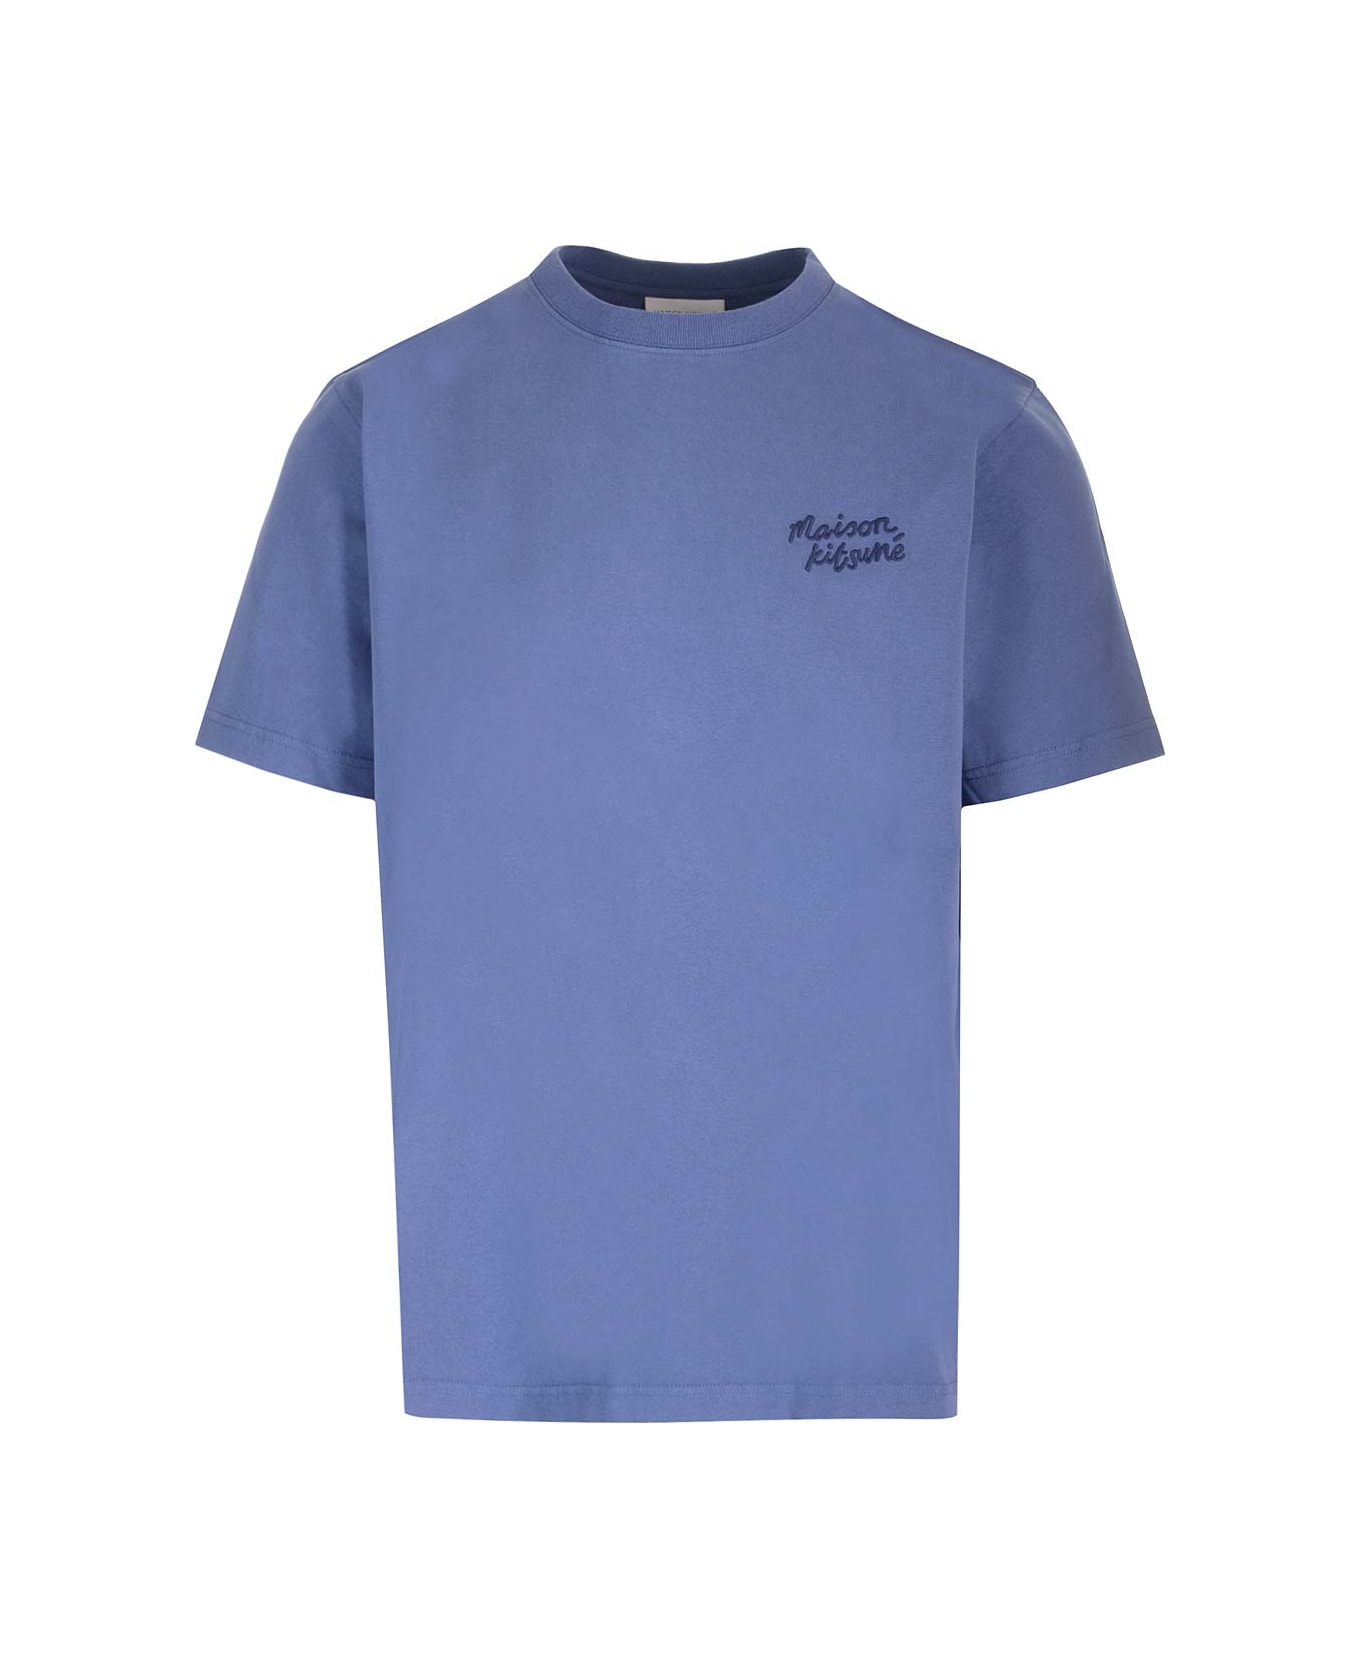 Maison Kitsuné Blue Crewneck T-shirt - Storm Blue シャツ